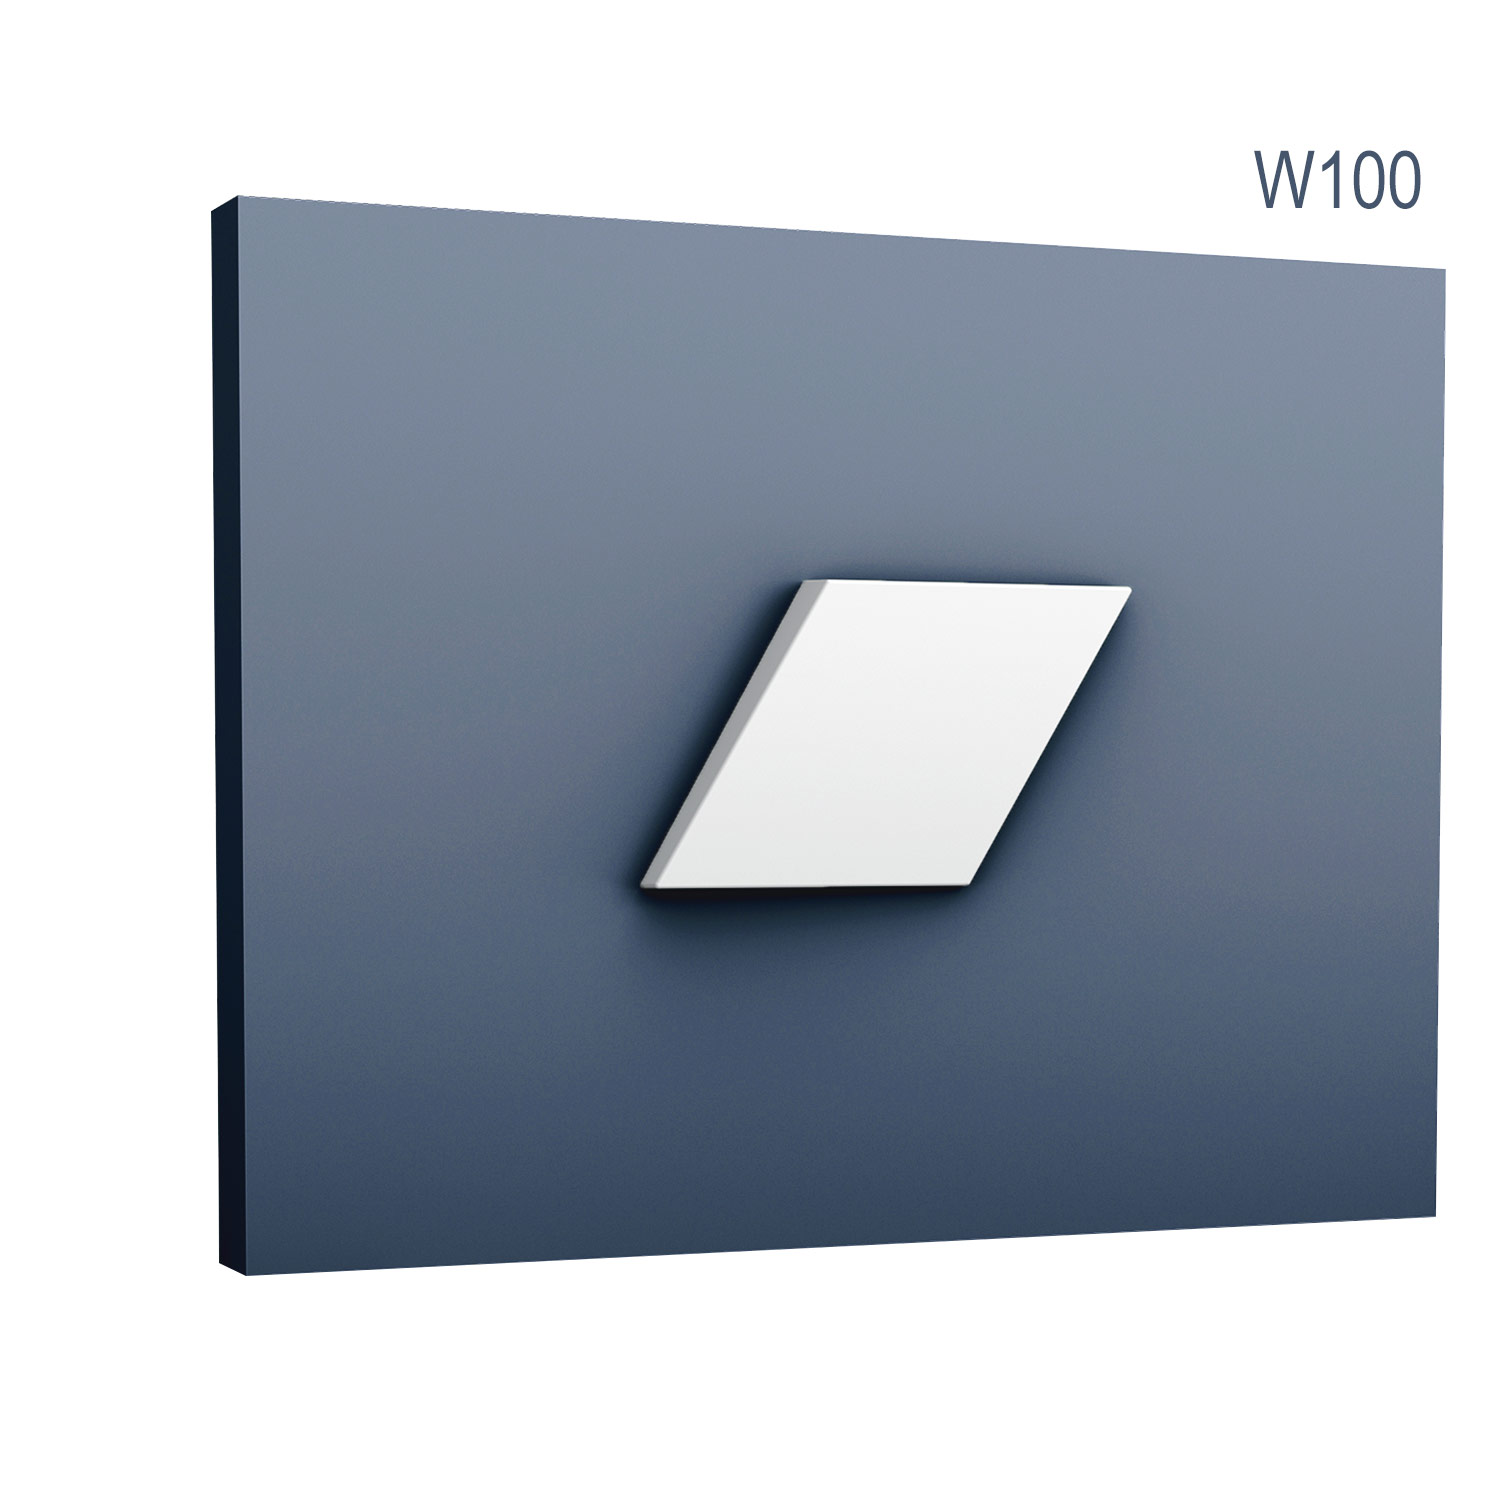 Panel Modern W100, Dimensiuni: 15 X 25.8 X 2.9 cm, Orac Decor Orac Decor